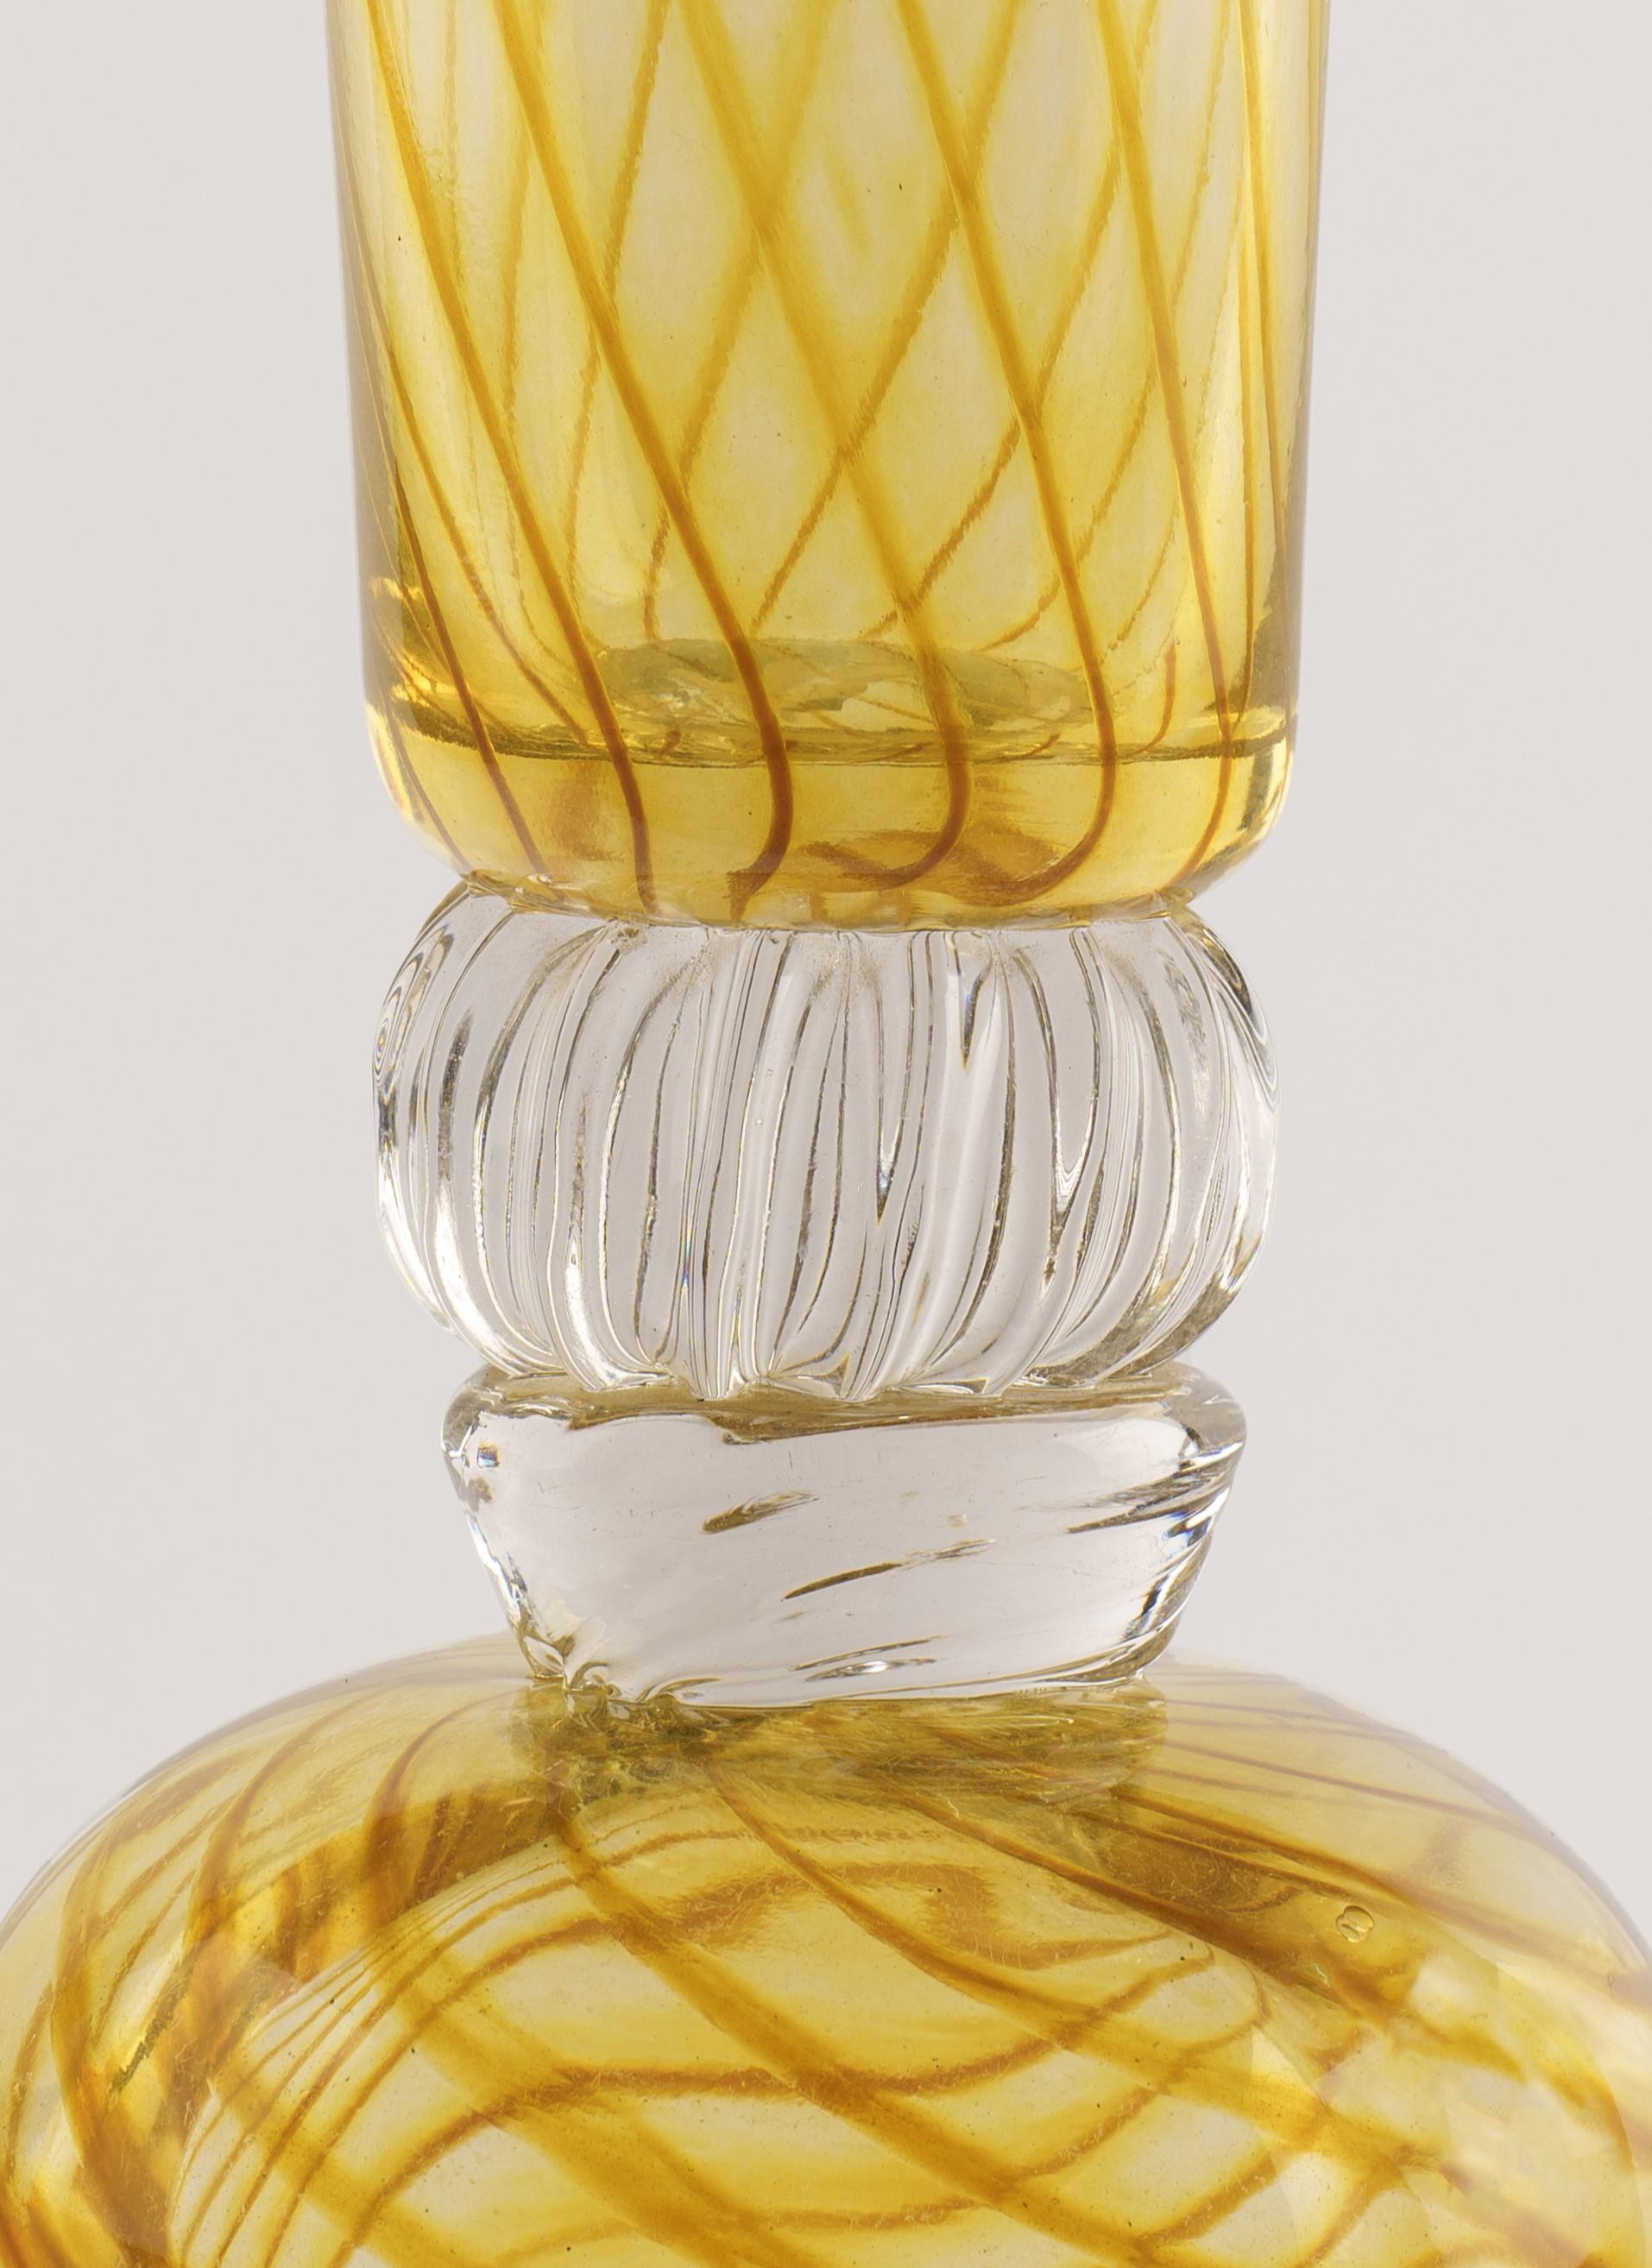 L'extraordinaire talent artistique de Jeremiah Jacobs transparaît dans cette captivante sculpture en verre soufflé, mélange harmonieux d'élégance et d'innovation. Cette pièce met en valeur la beauté resplendissante du verre doré et du verre